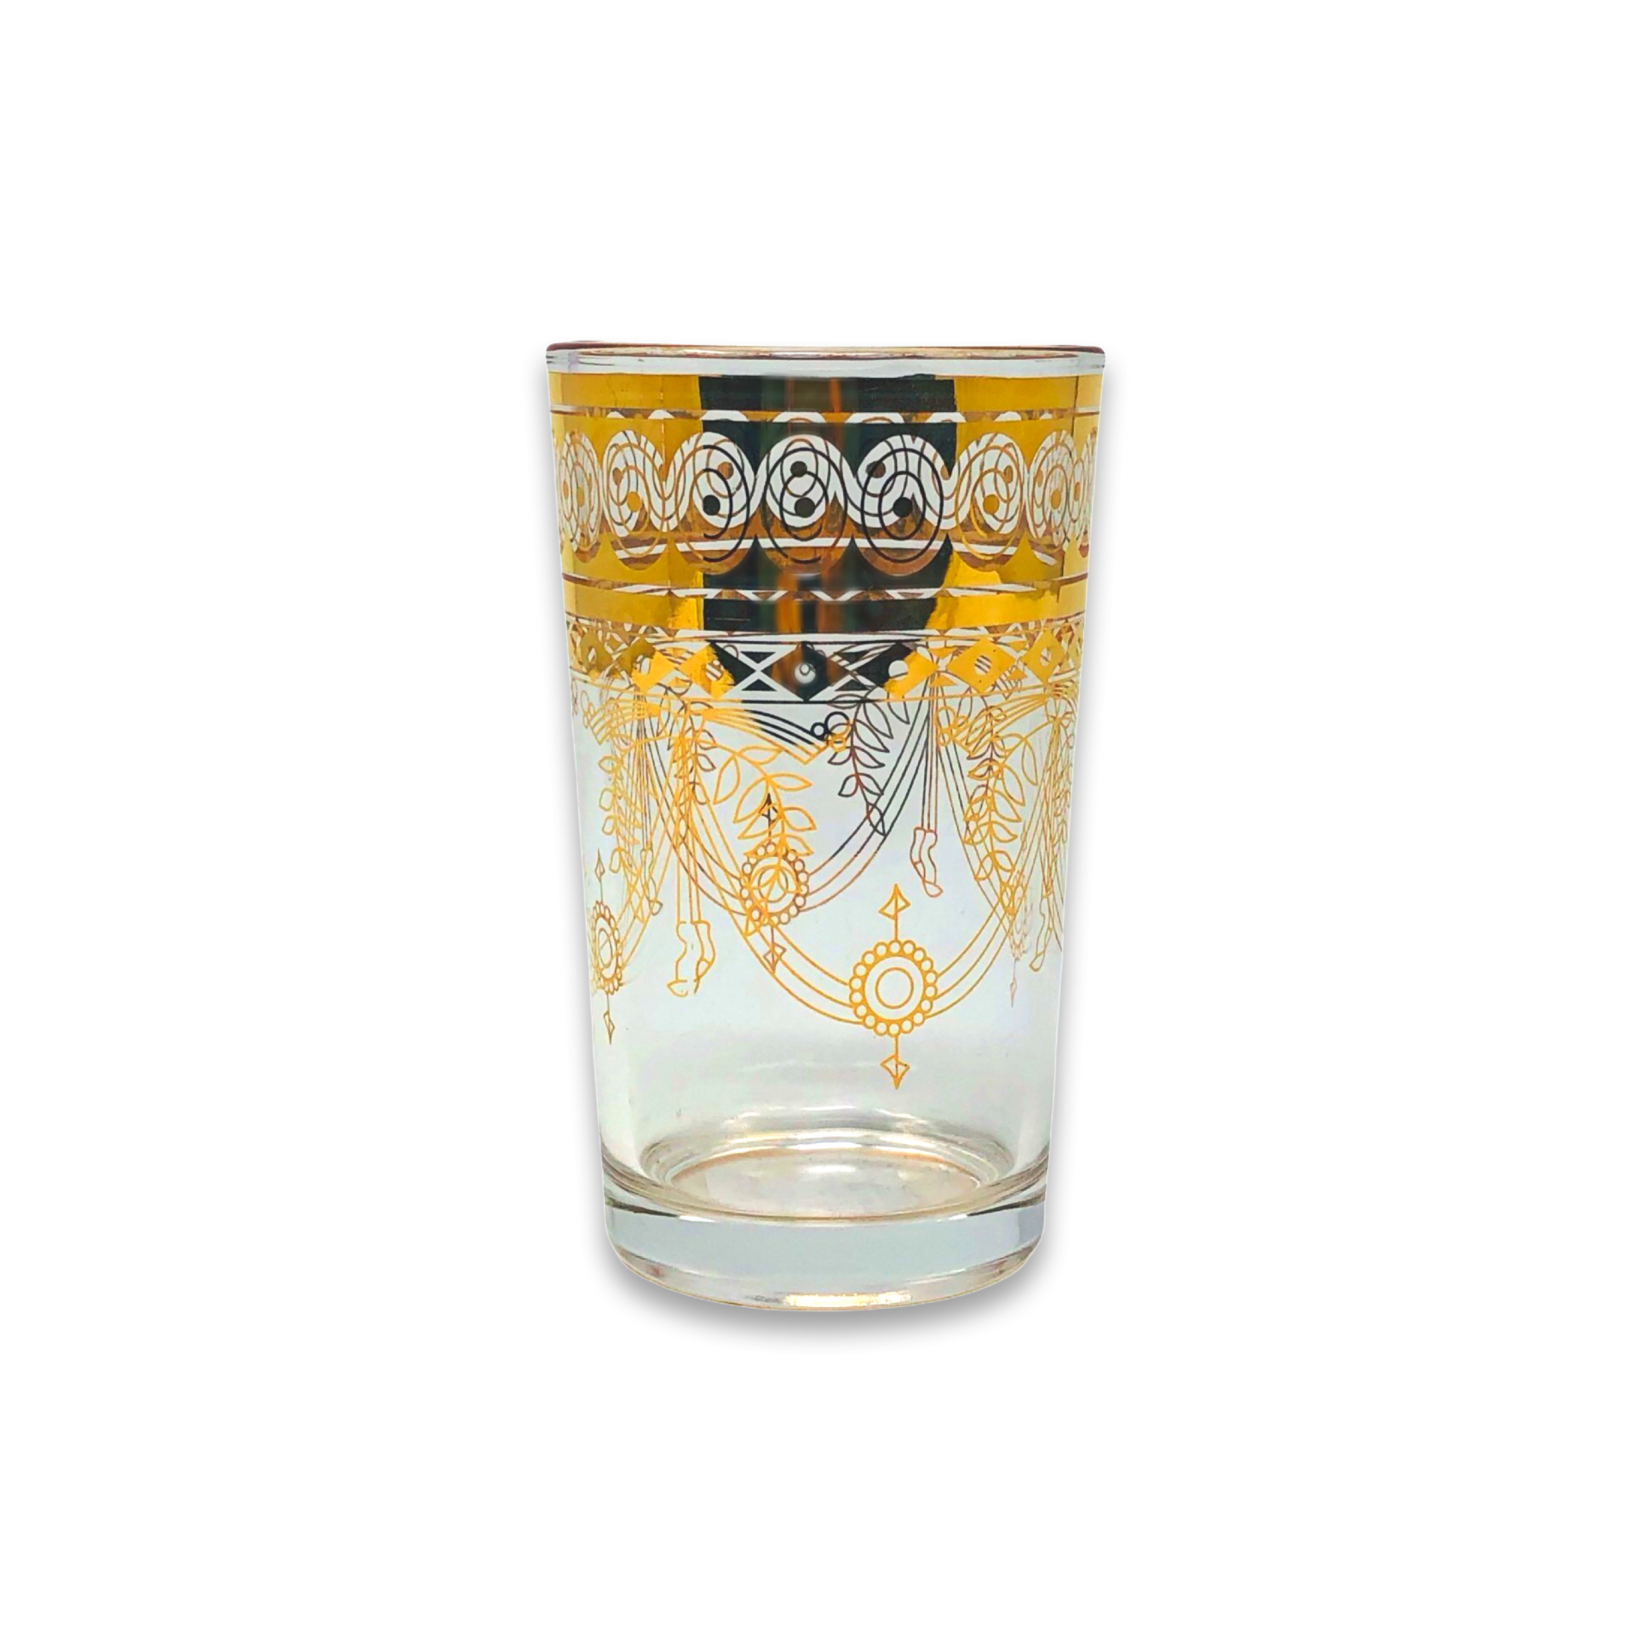 FAIRE (THE WINE SAVANT) GOLD MOROCCAN GLASSES